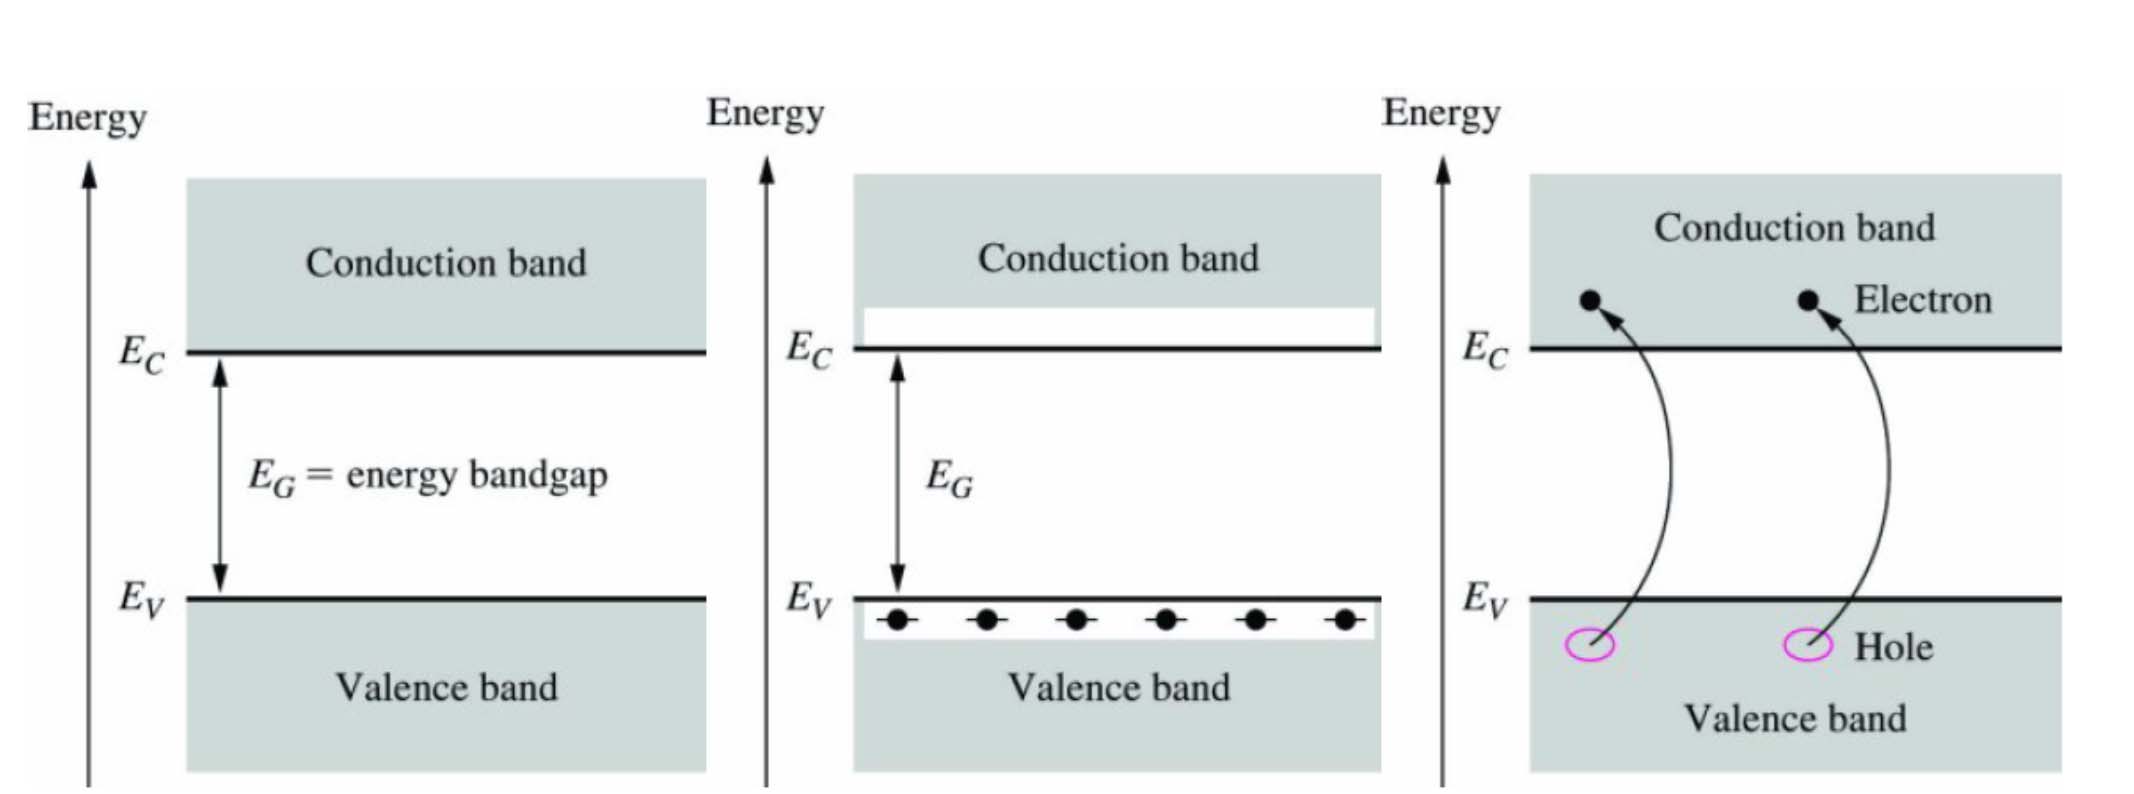 Οι ενεργειακές ζώνες του πυριτίου Ζώνη Σθένους Ζώνη Αγωγιμότητας Ενεργειακό Χάσμα Τα ηλεκτρόνια σθένους